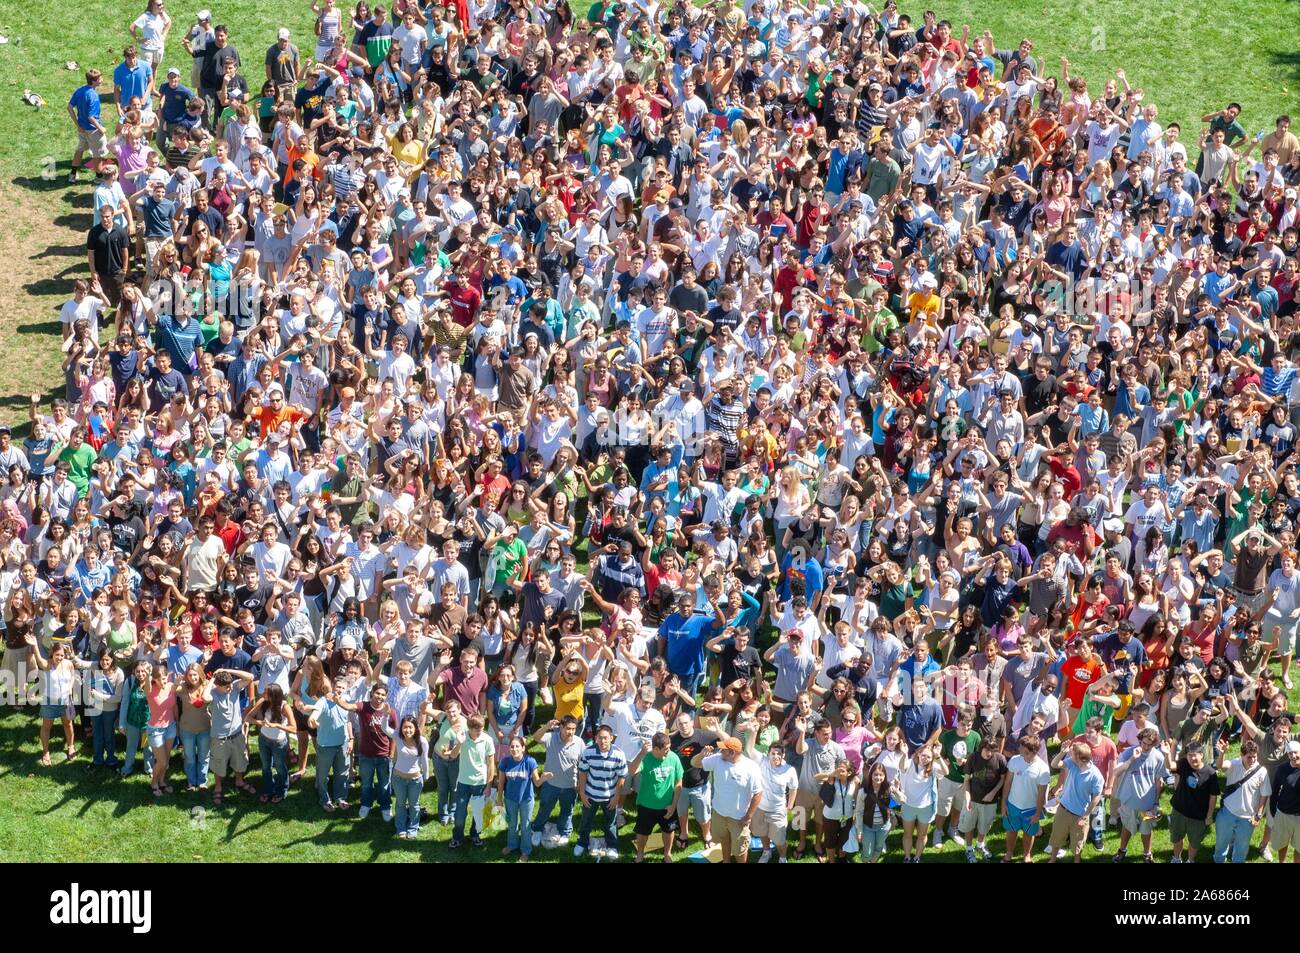 Vue d'ensemble de la foule, debout dans l'herbe sur une journée ensoleillée durant une semaine de l'orientation, de l'événement et à la recherche jusqu'à l'appareil photo, à l'Université Johns Hopkins University, Baltimore, Maryland, le 4 septembre 2006. À partir de la collection photographique de Homewood. () Banque D'Images